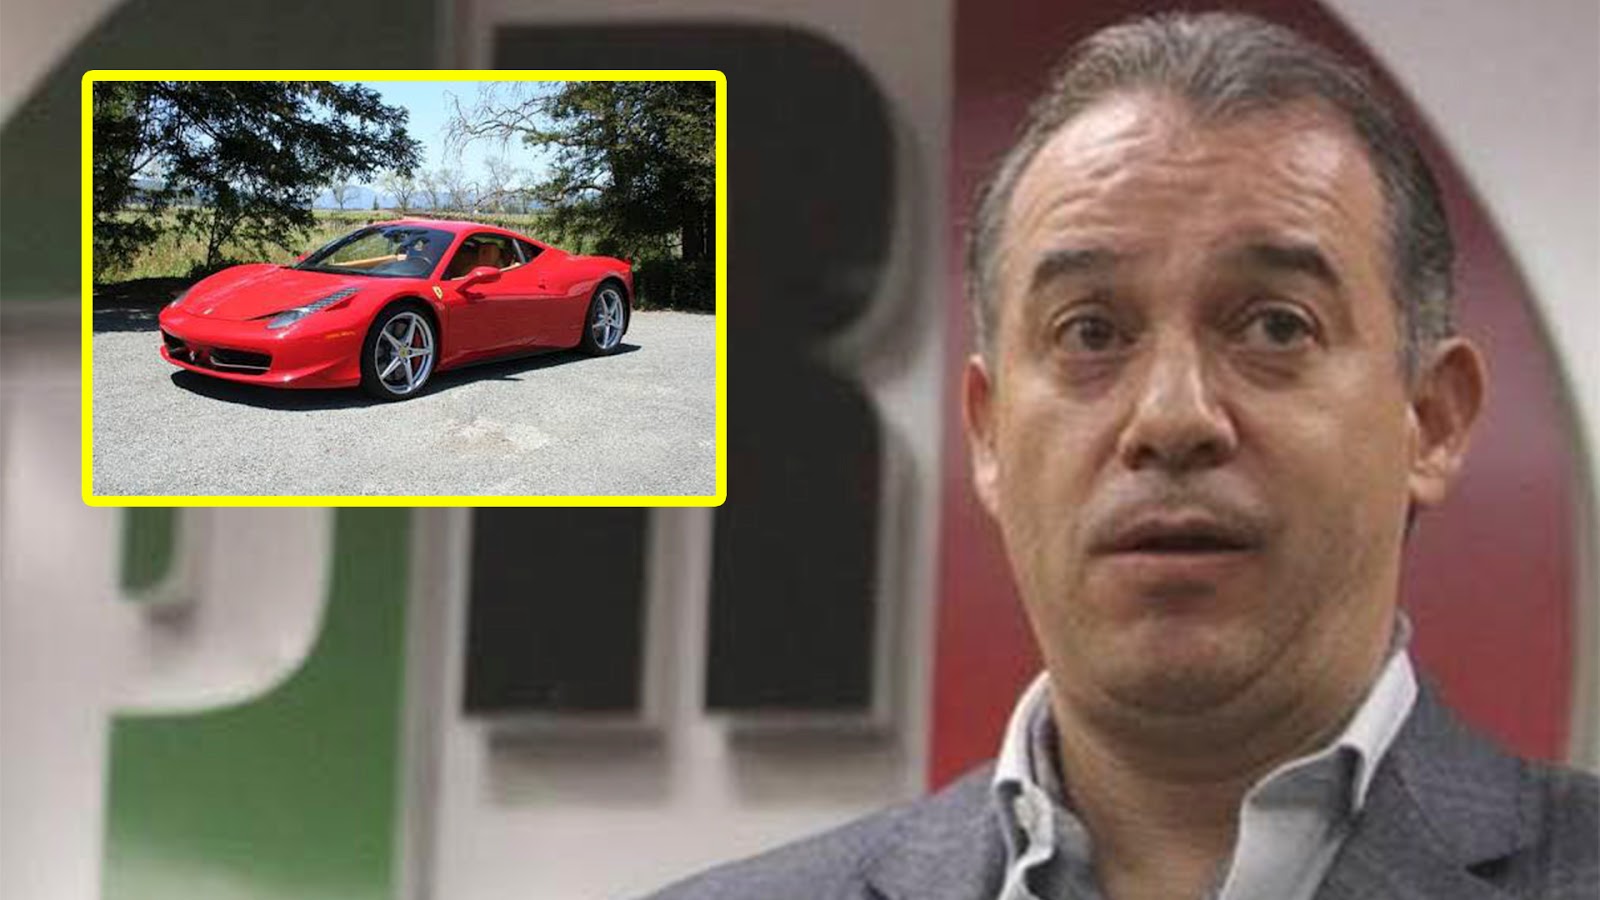  Justifica Raúl Cervantes como “error administrativo” uso de datos falsos para emplacar su Ferrari